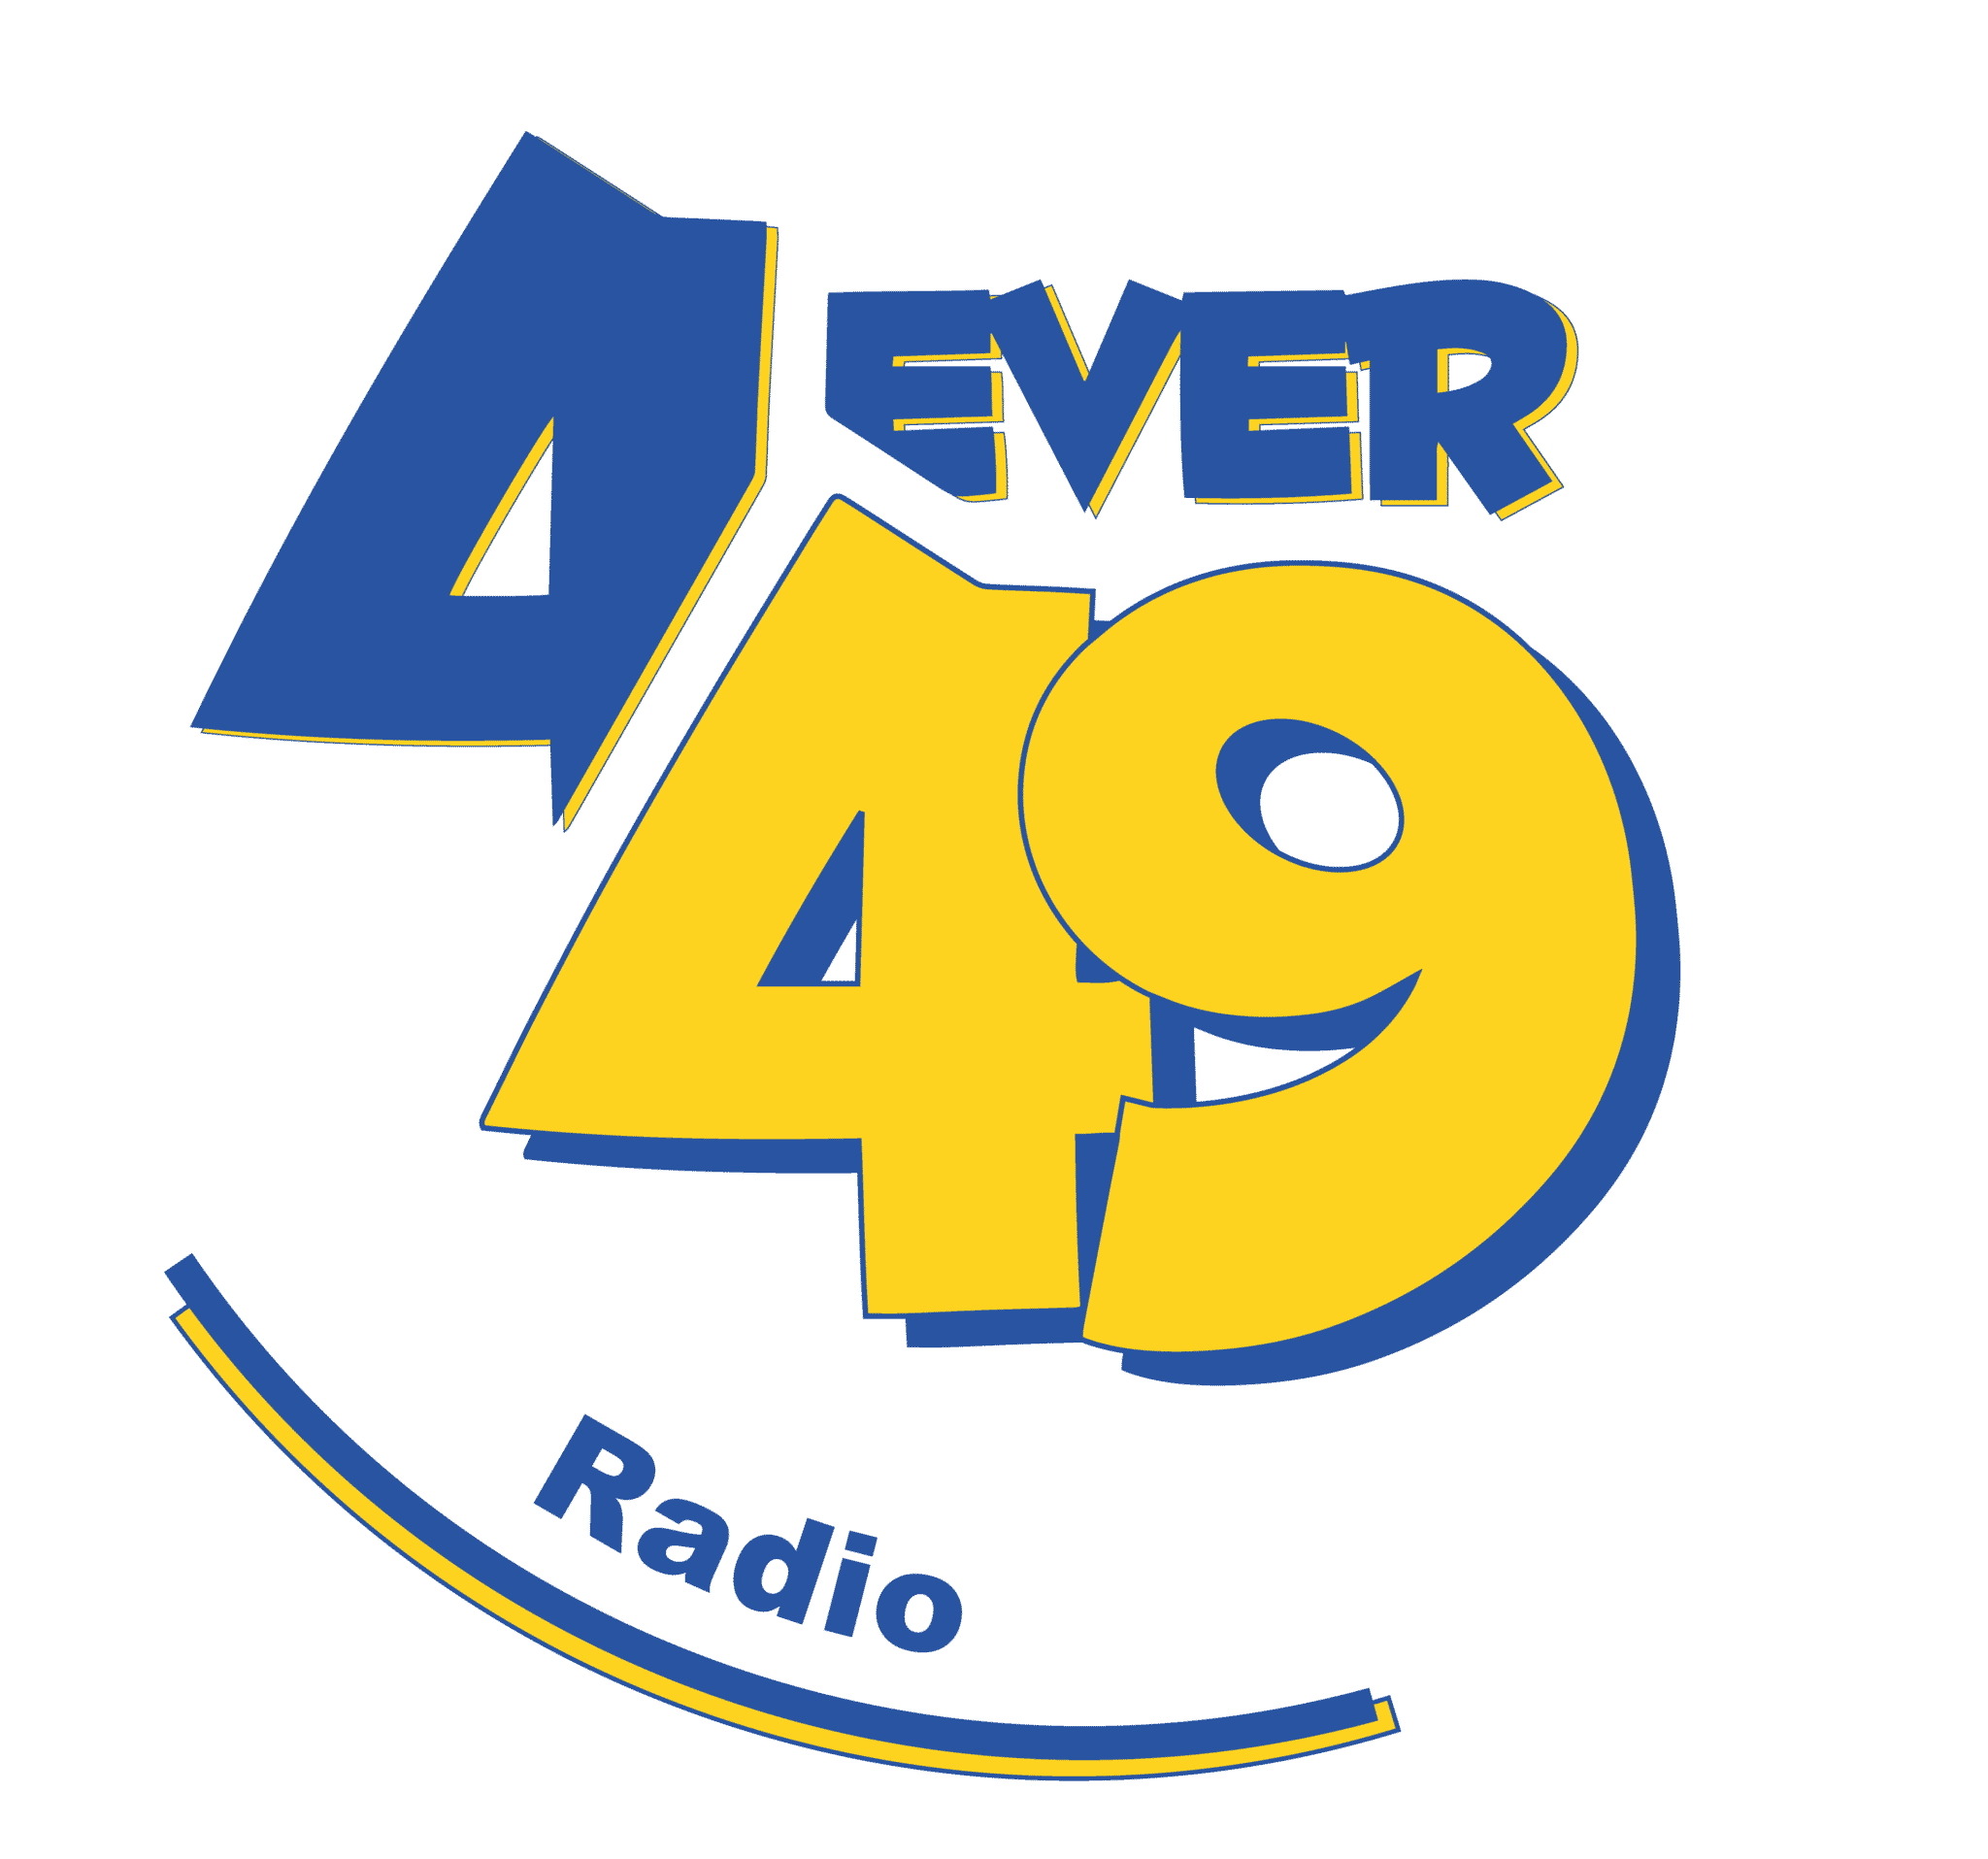 4EVER49 Radio logo met Radio tagline